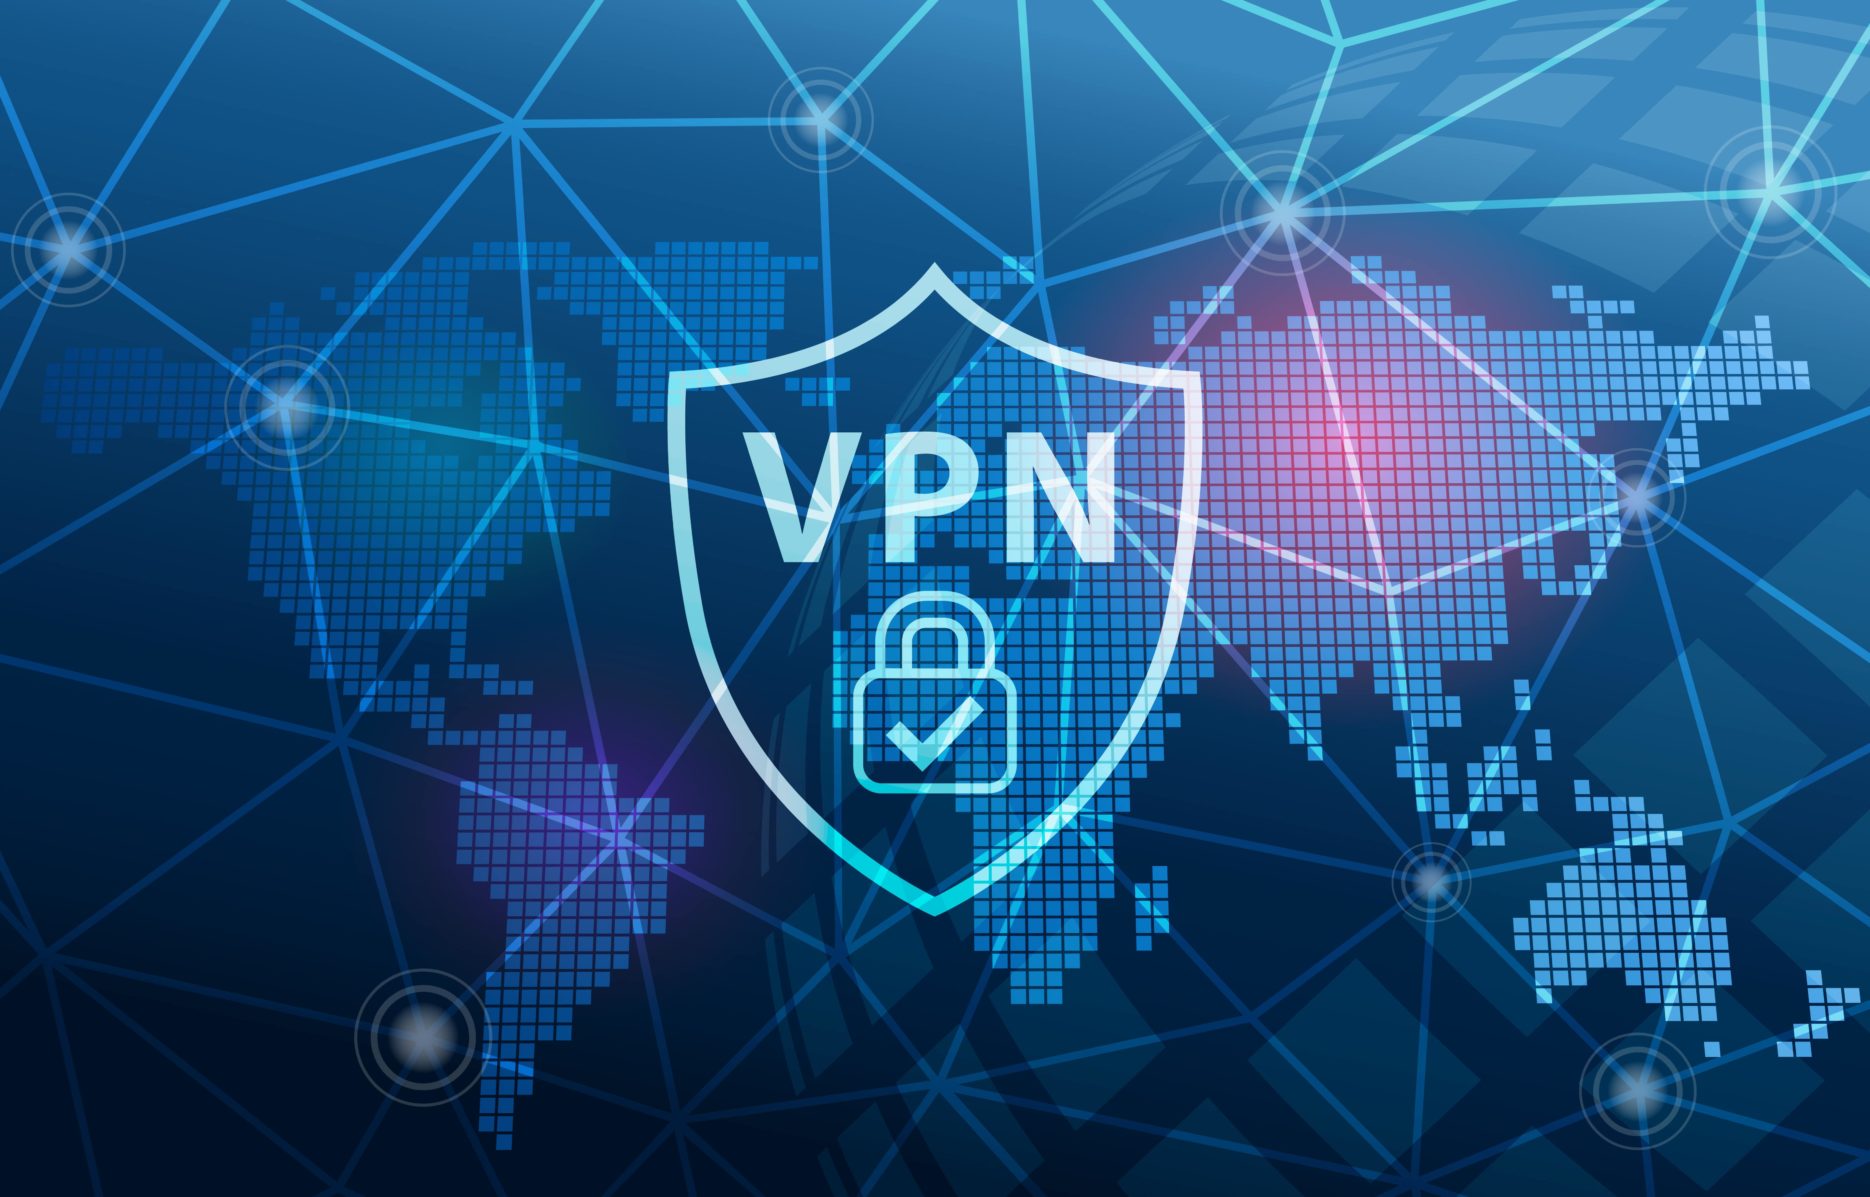 VPN use in China. Credit: Adobe Stock